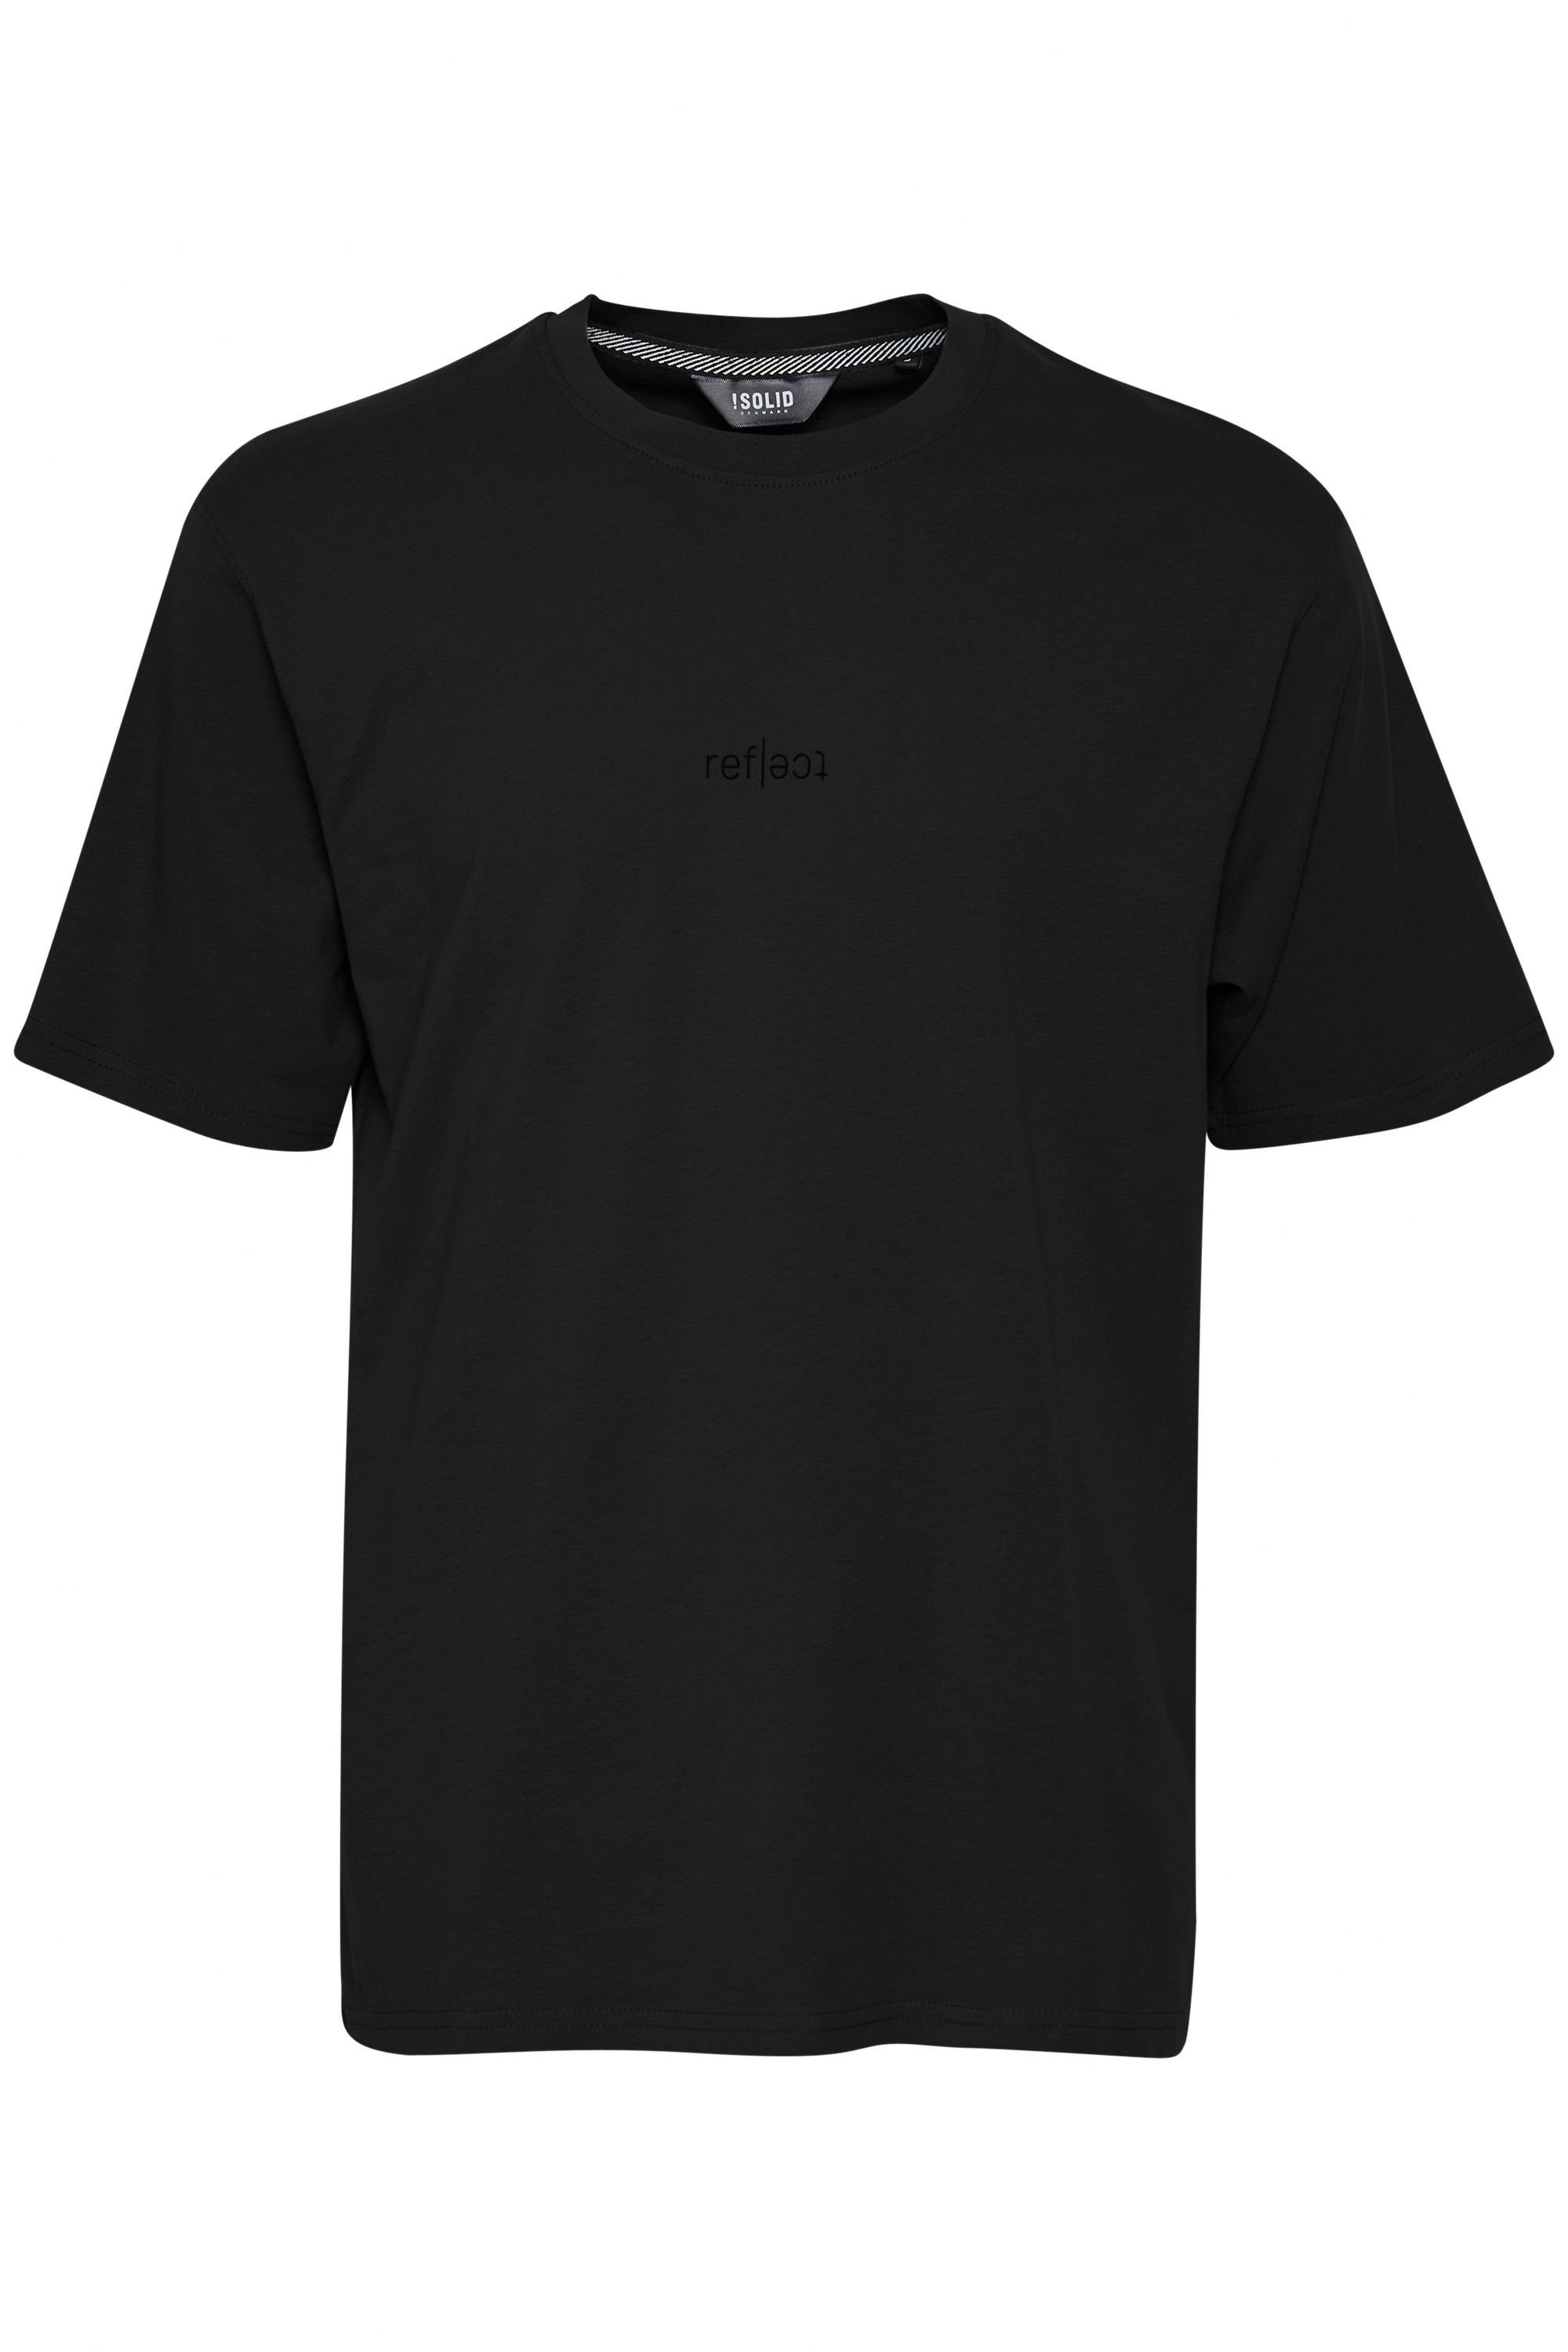 True SDBrendan !Solid Black (194008) T-Shirt